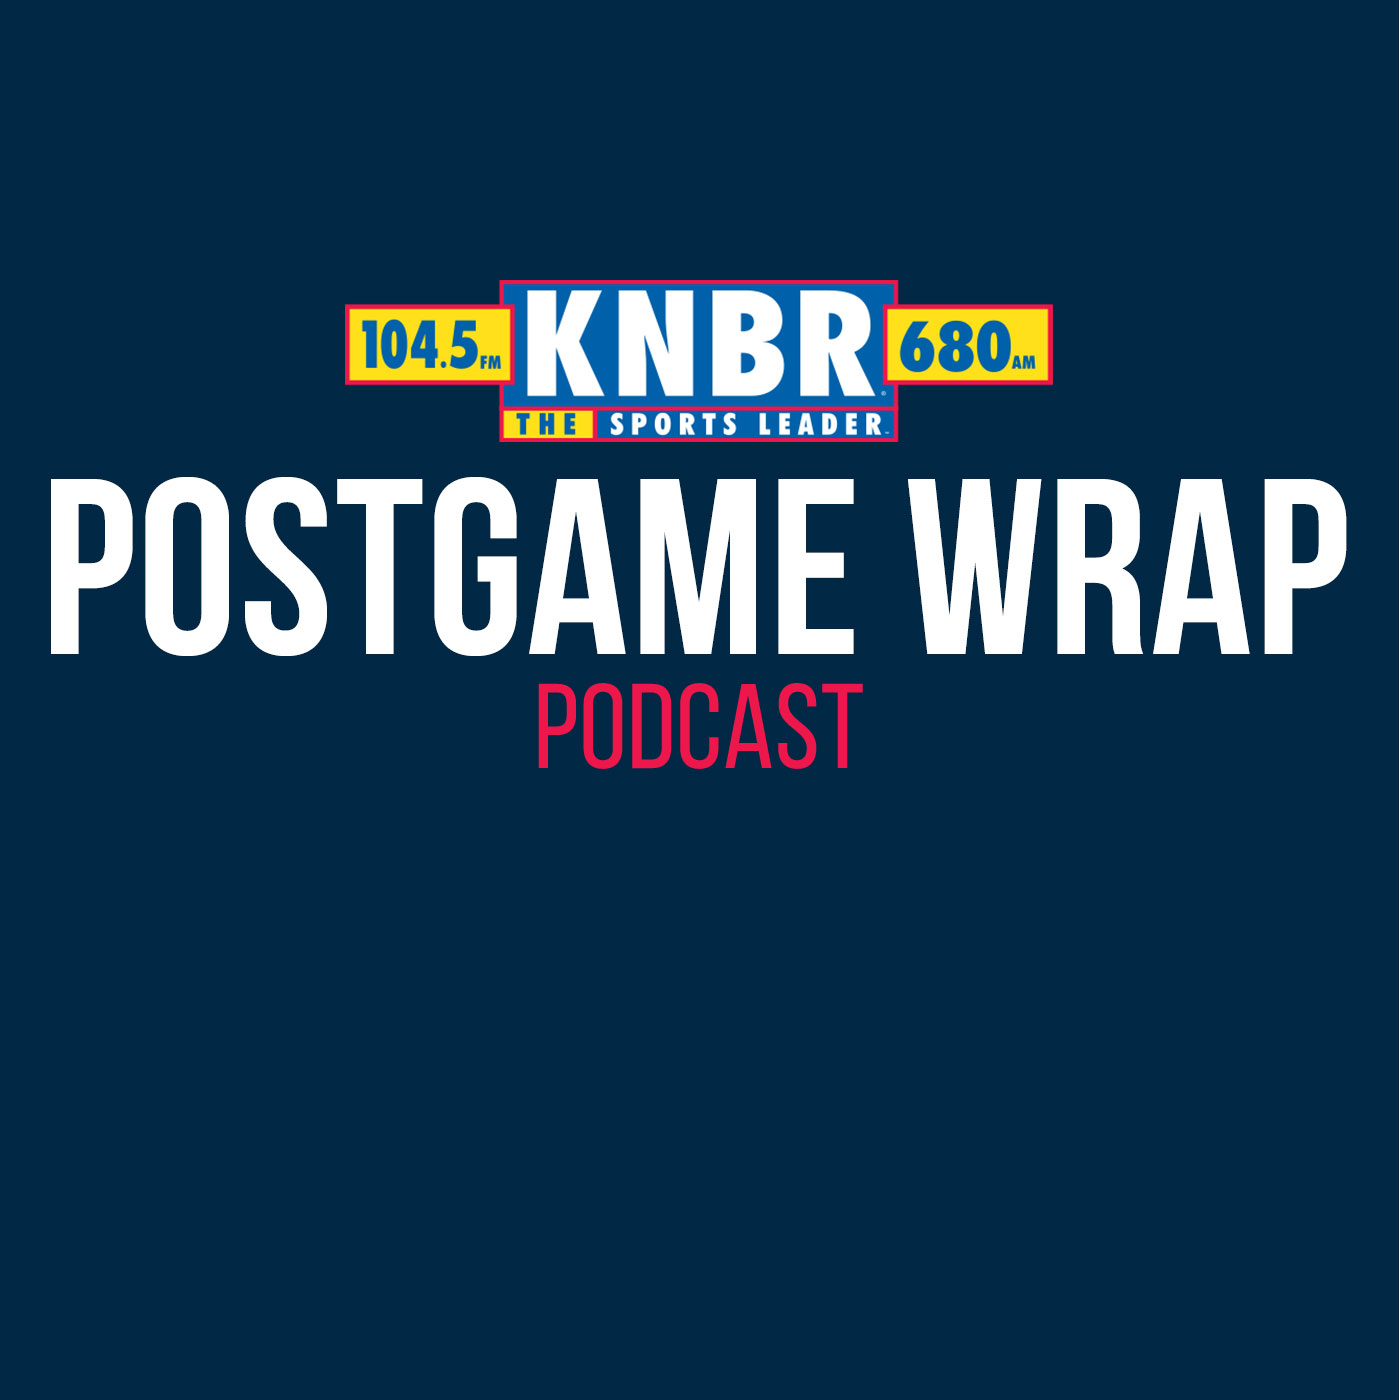 4-27 Postgame Wrap: Pirates 4, Giants 3